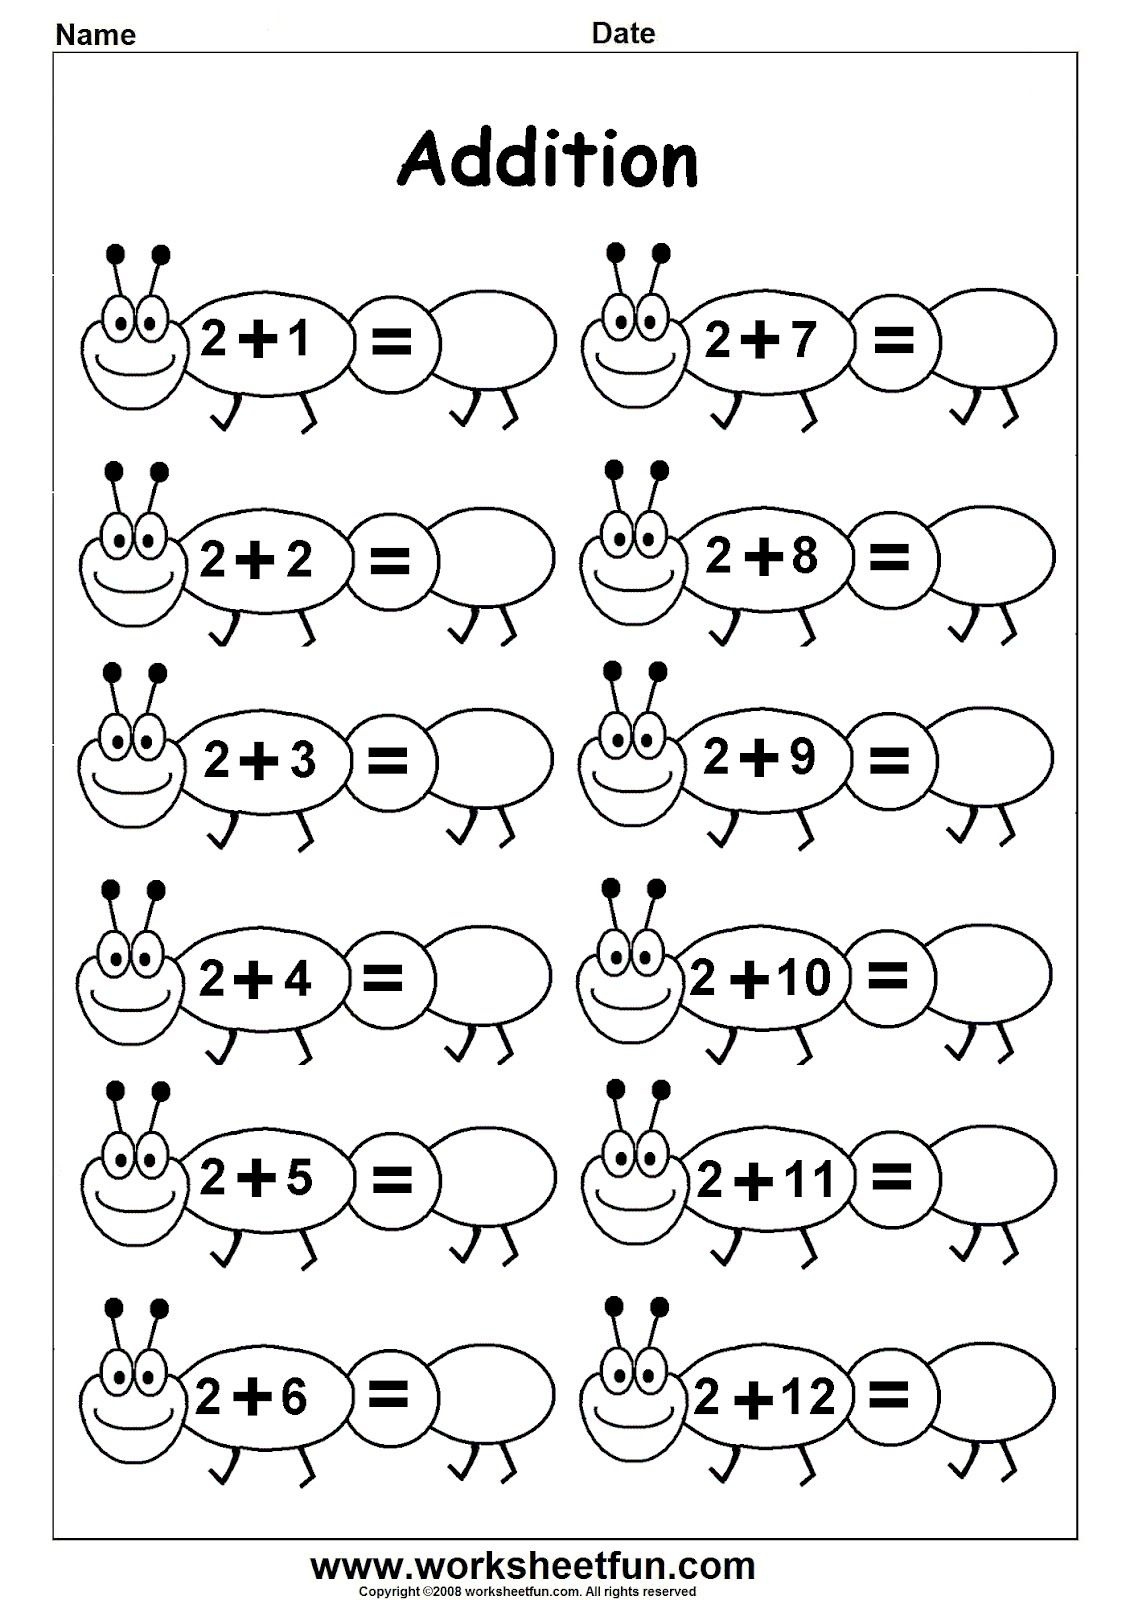 Worksheetfun - Free Printable Worksheets | Numrat Deri 20 - Free Printable Preschool Addition Worksheets